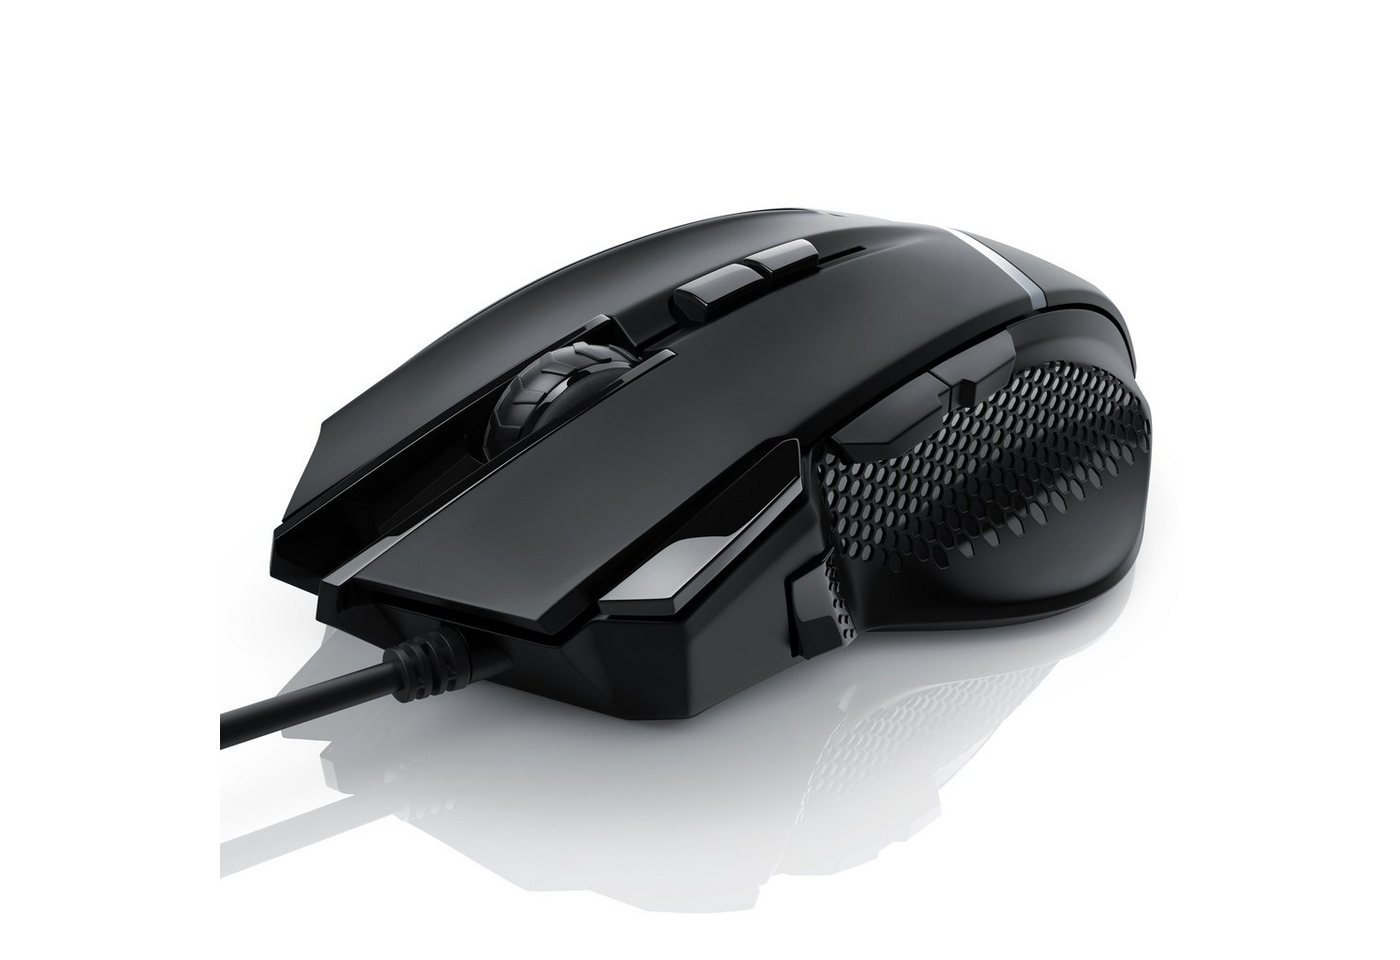 CSL Gaming-Maus (kabelgebunden, 500 dpi, ergonomisch, 3200 dpi, Abtastrate wählbar, Mouse inkl. Gewichten) von CSL